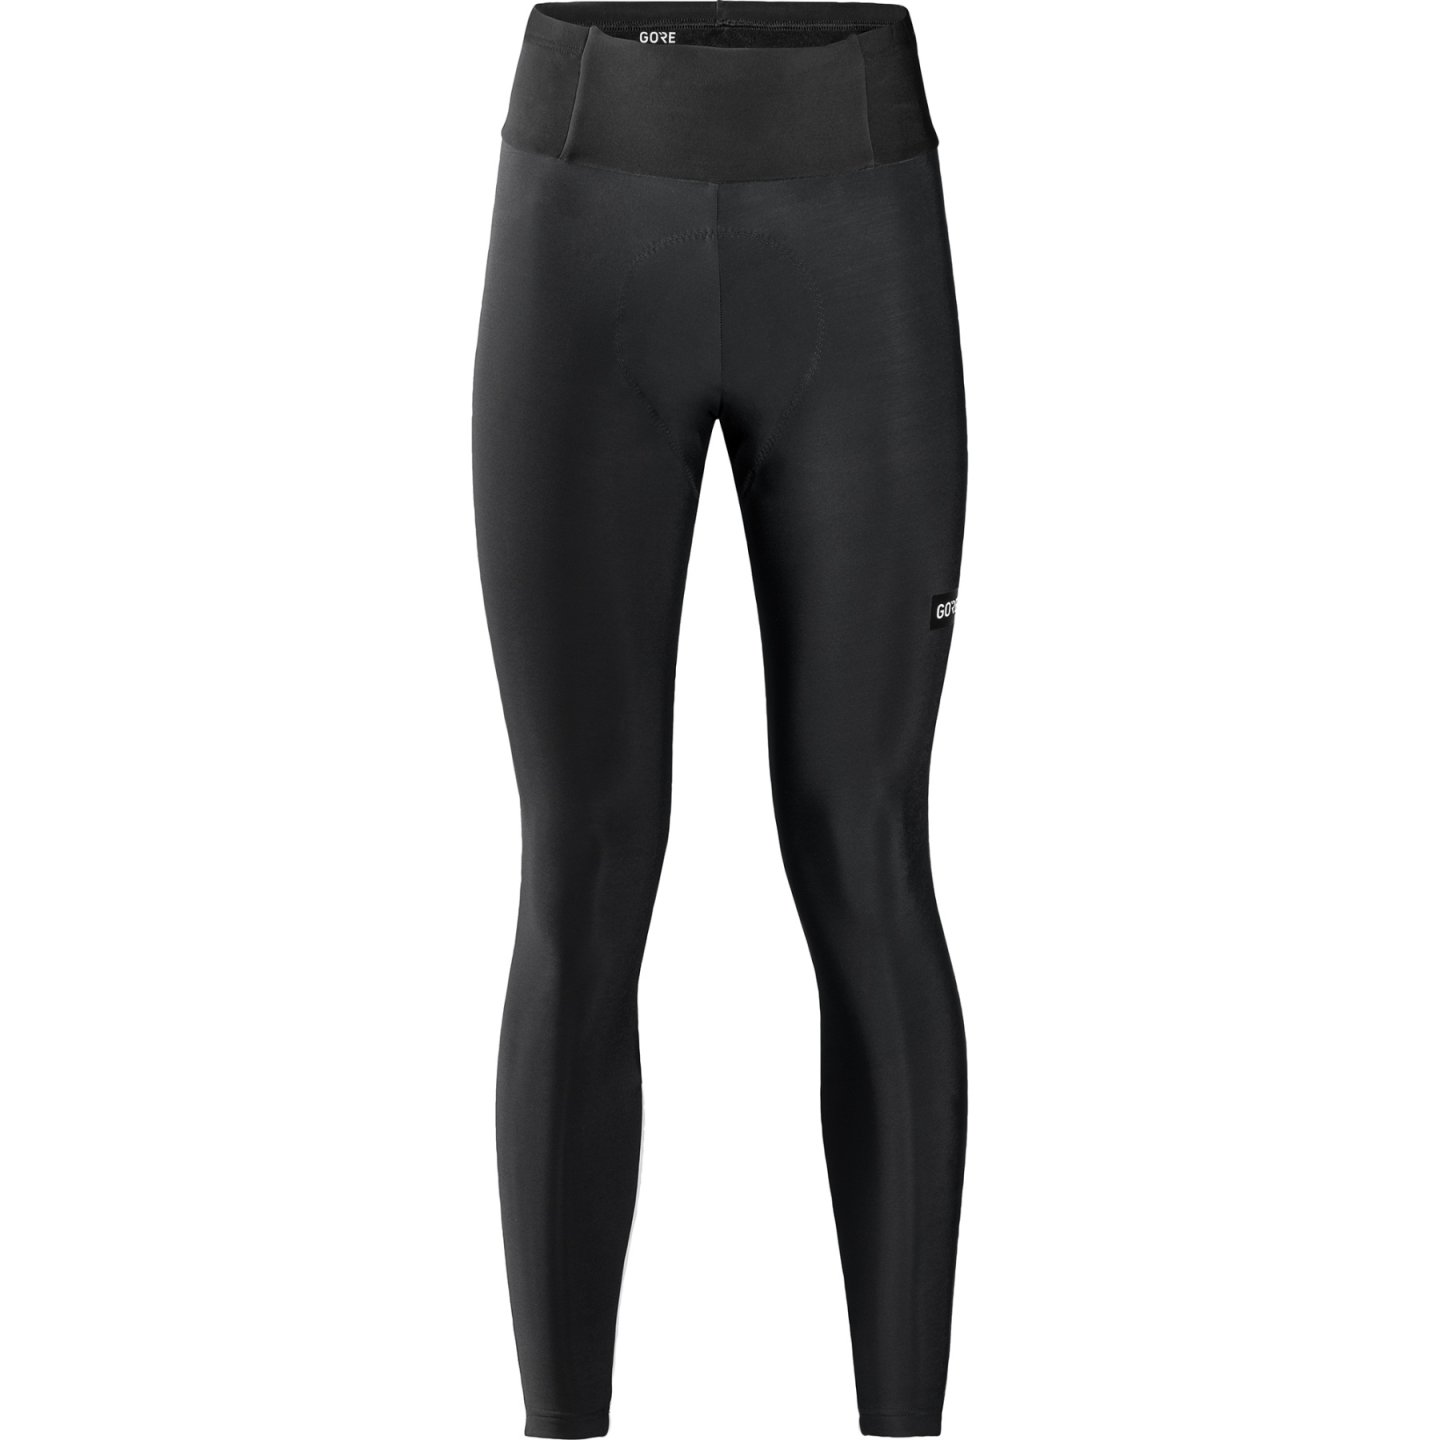 GORE® Wear Progress Thermo Tights+ Damen black - M/40